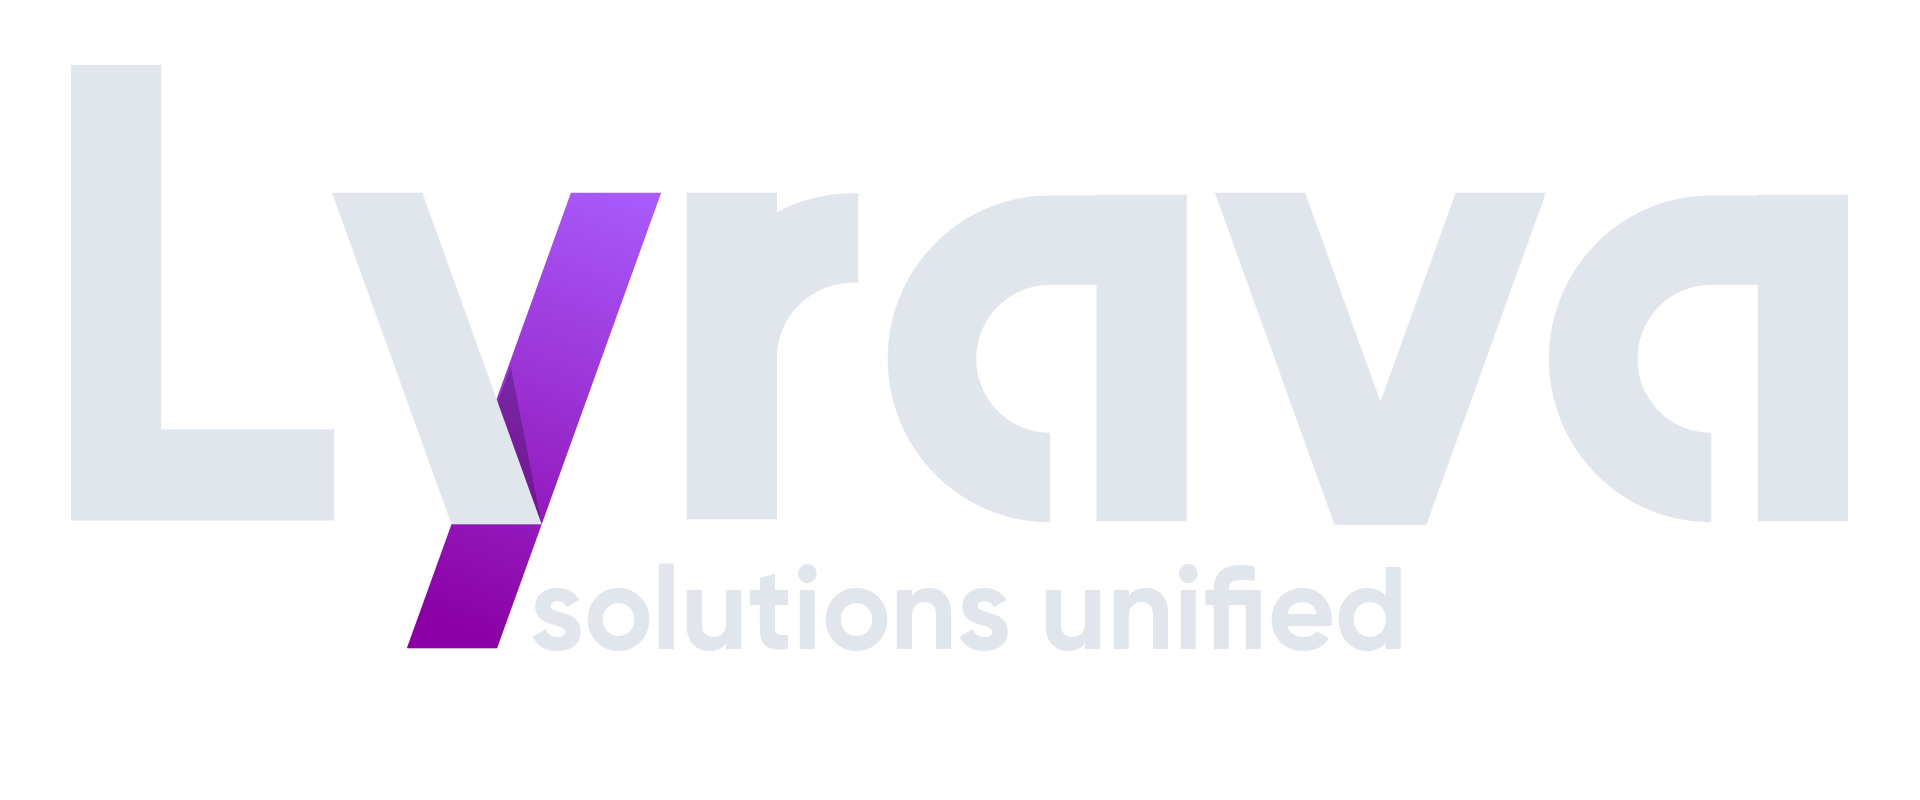 Lyrava Technologies